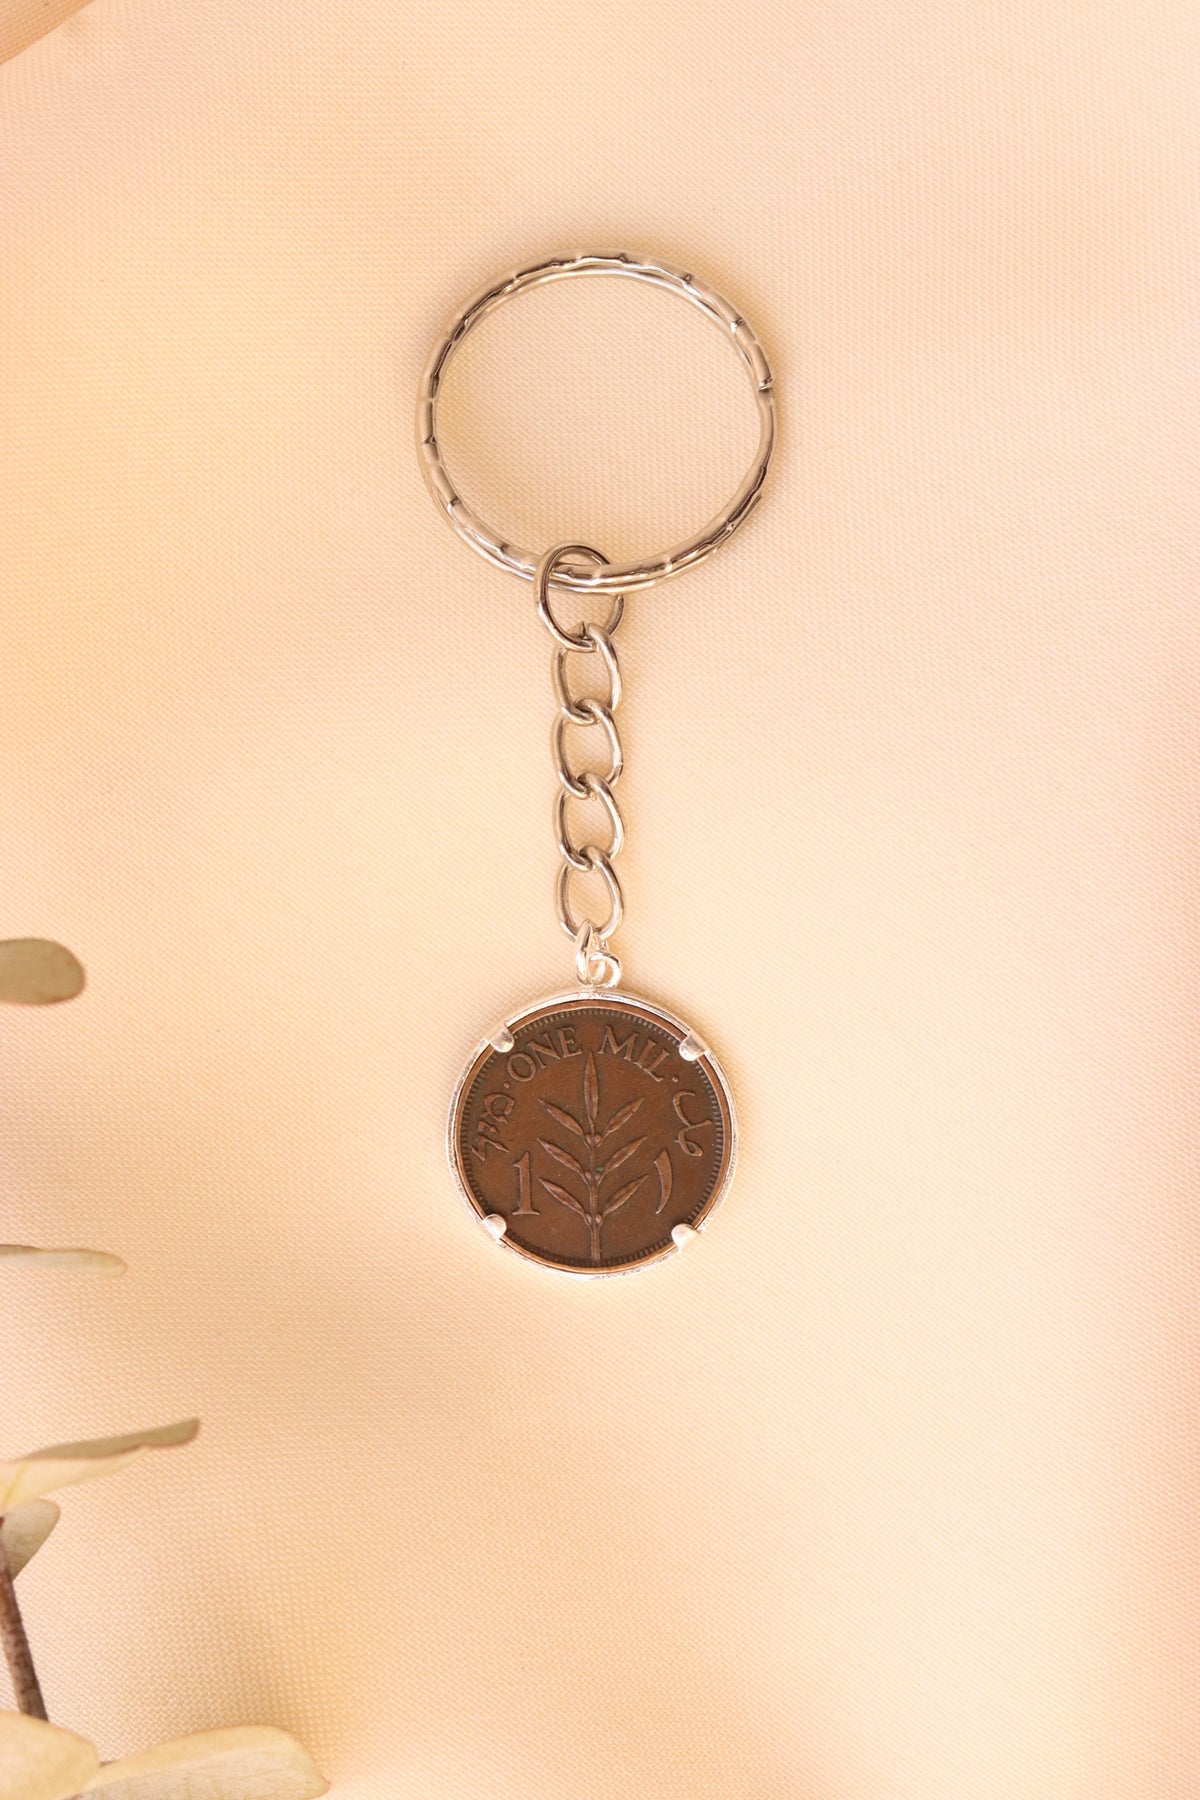 ميدالية مفاتيح العملة الفلسطينية ١مل مع ايطار بسيط